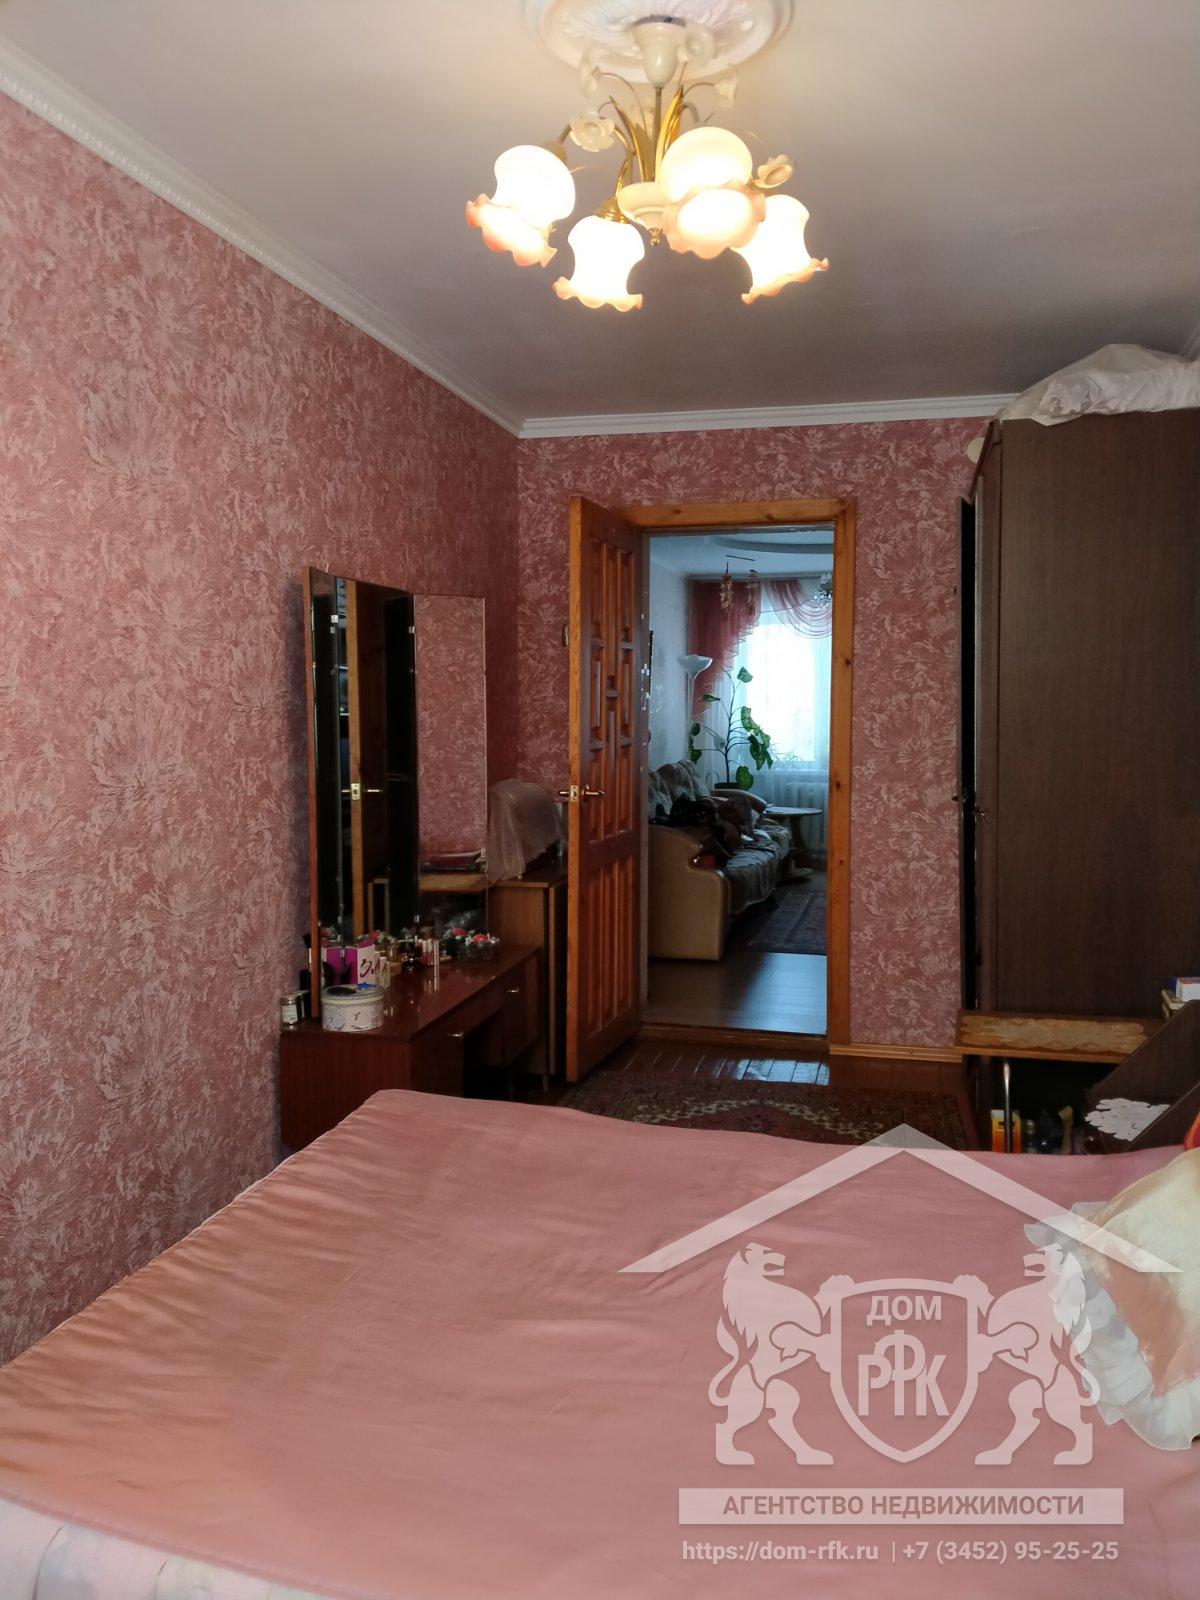 3-х комнатная квартира в благоустроенном доме в селе Ярково